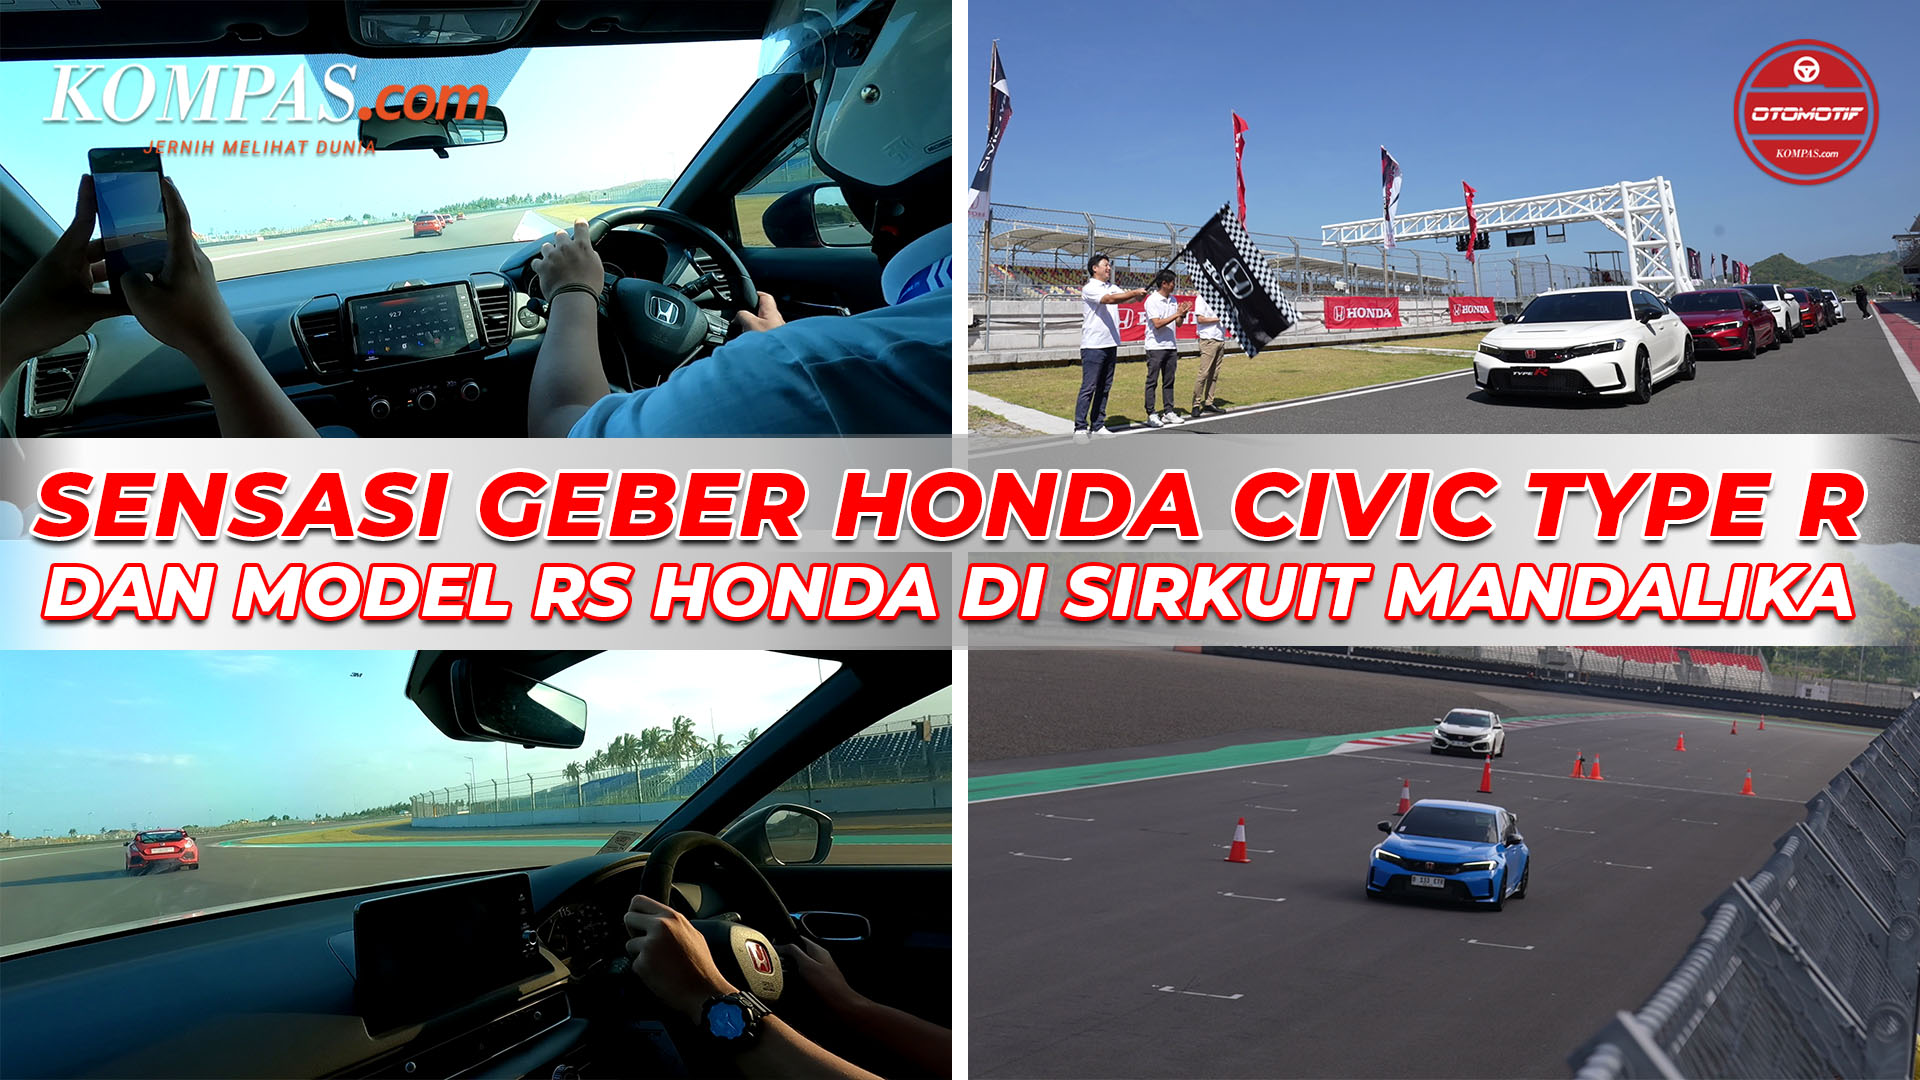 Sensasi Geber Civic Type R dan model RS Honda Di Sirkuit Mandalika